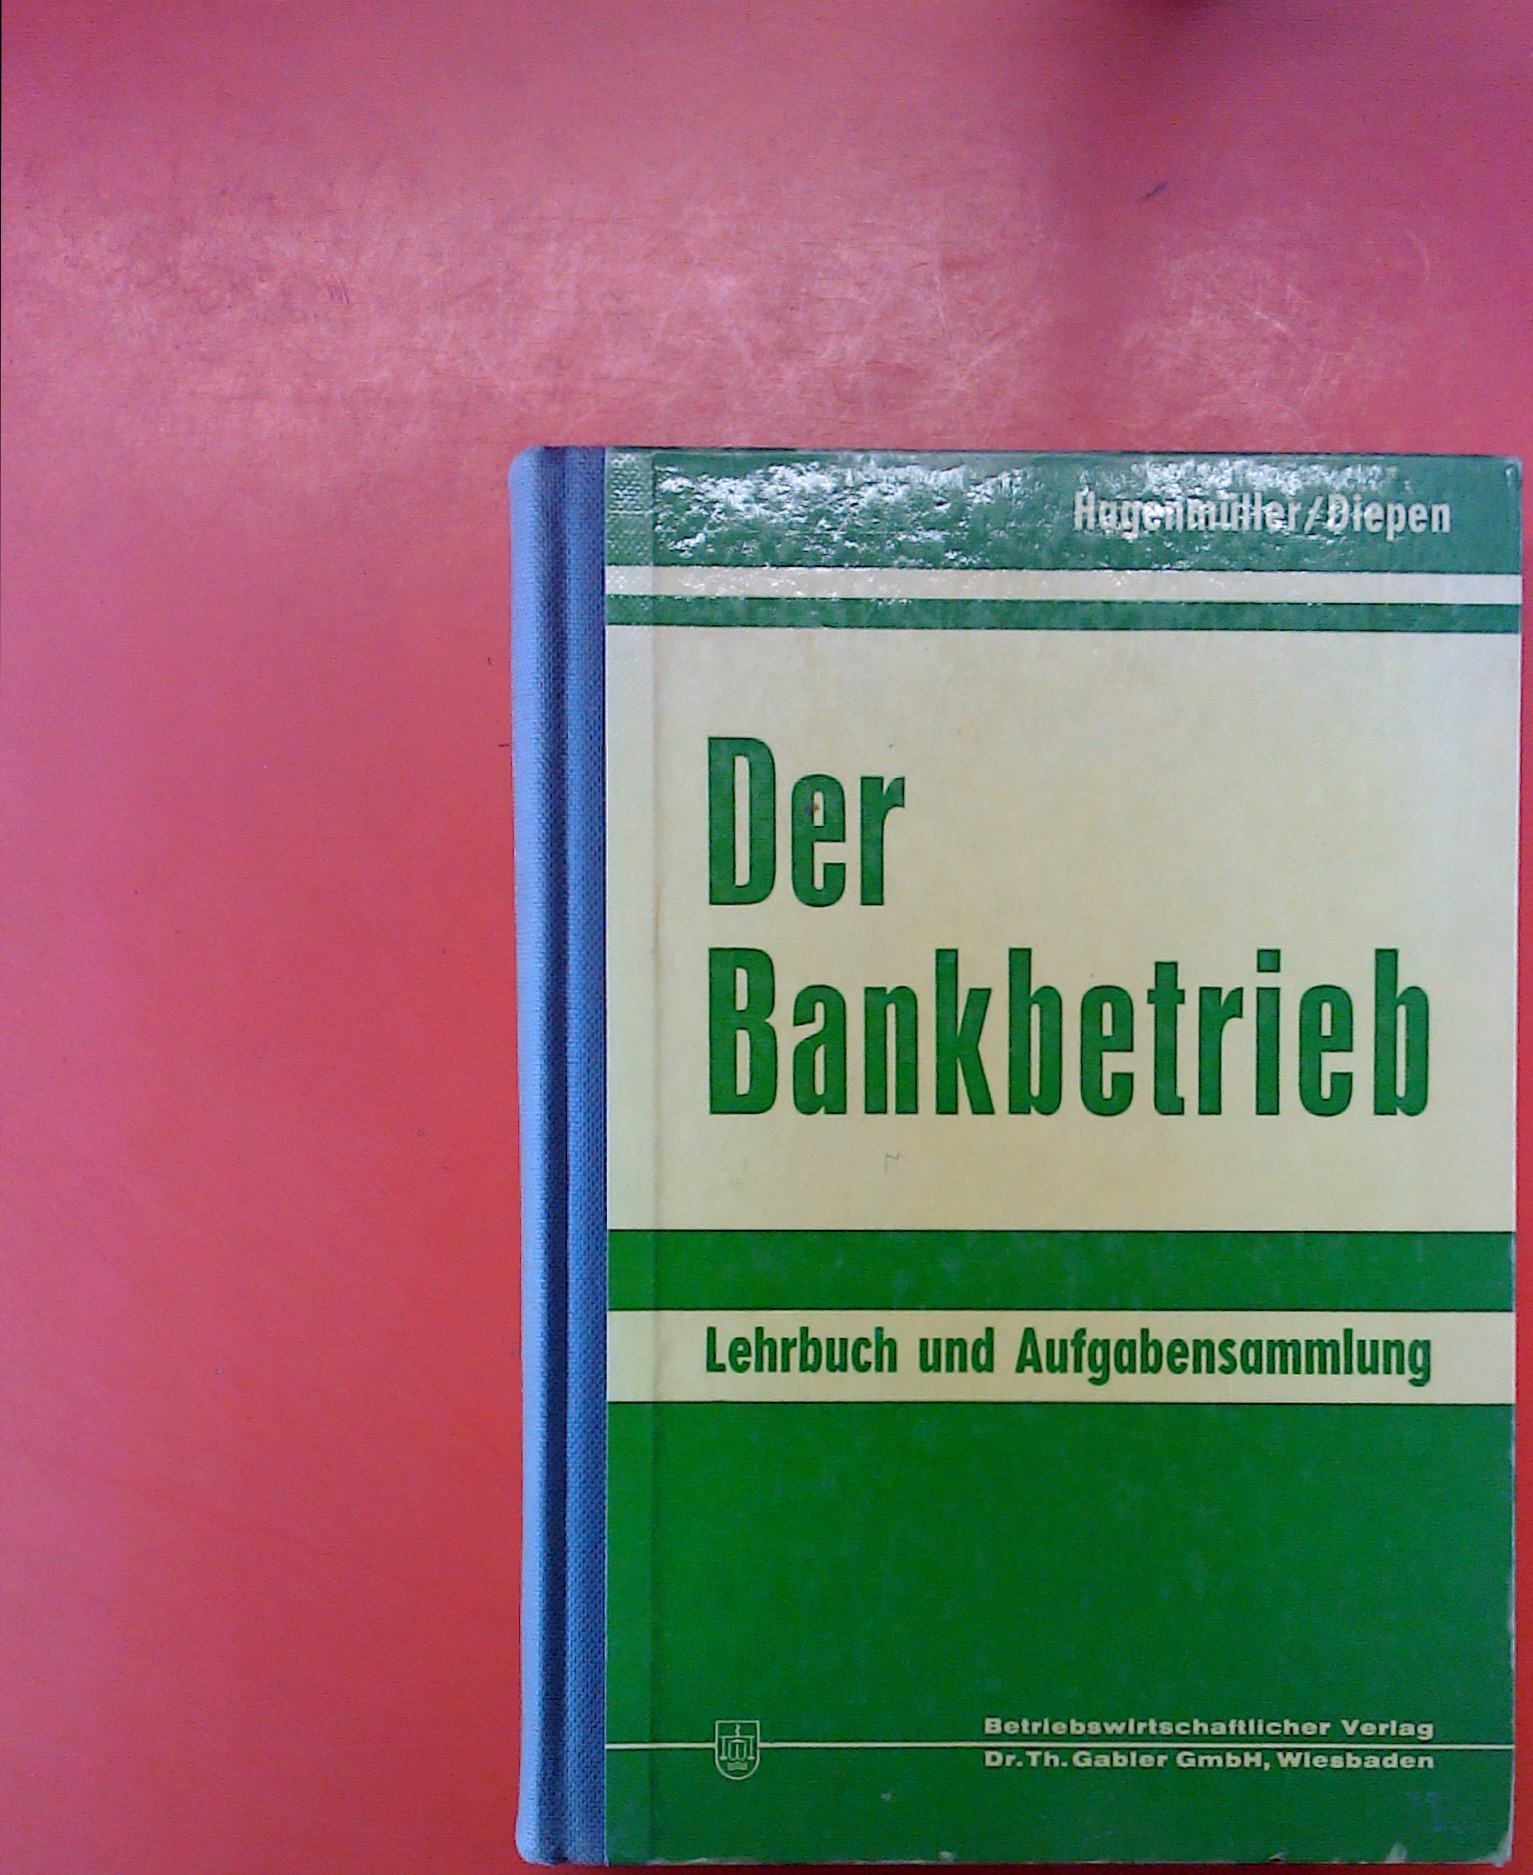 Der Bankbetrieb. Lehrbuch und Aufgabensammlung, 6. unveränderte Auflage - Prof. Dr. Karl Fr. Hagenmüller, Dipl.-Hdl. Gerhard Diepen